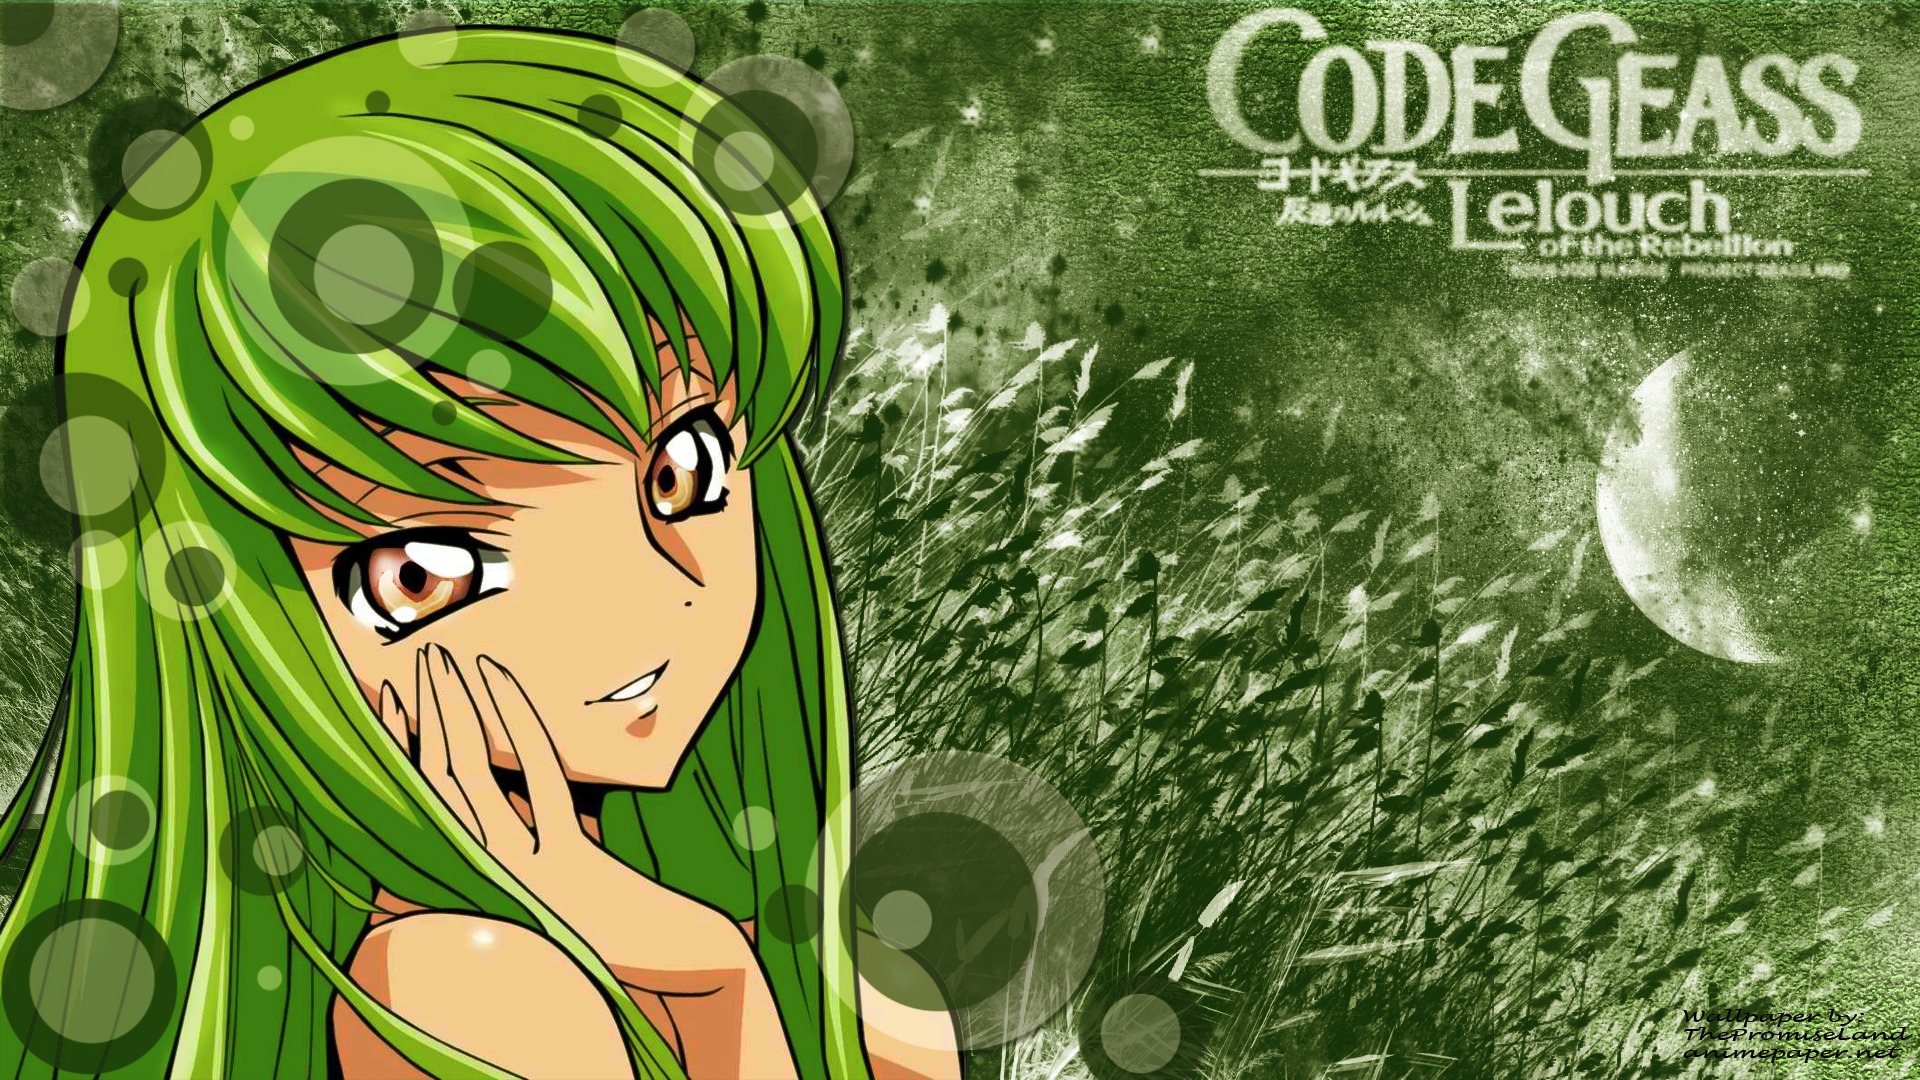 Free download wallpaper Anime, Code Geass, C C (Code Geass) on your PC desktop